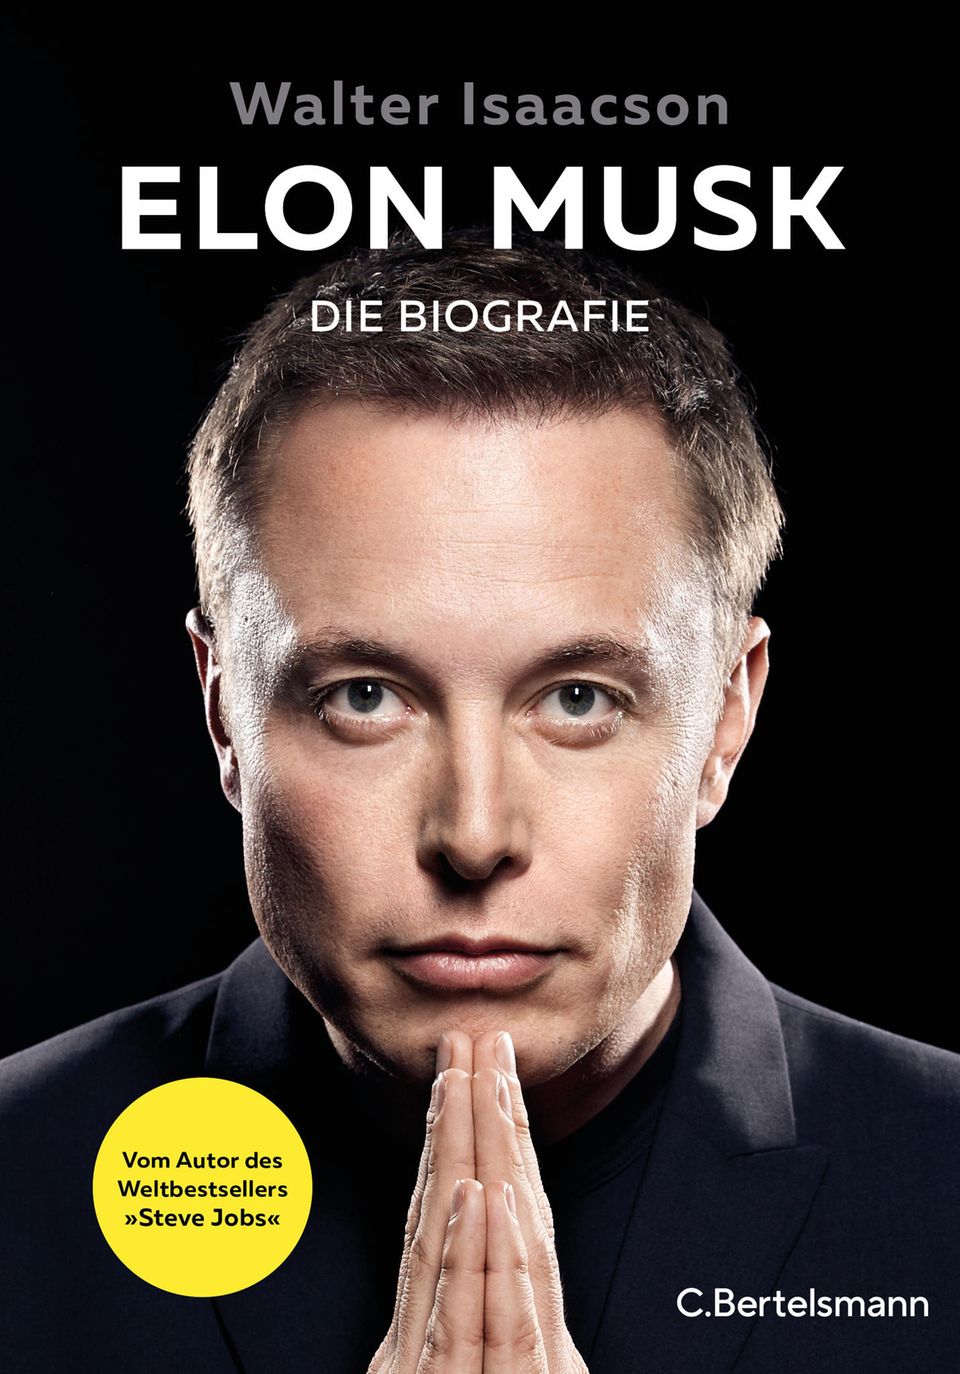 Walter Isaacson: „Elon Musk – Die Biografie“, erschienen im Verlag C. Bertelsmann, 832 Seiten, 38 Euro